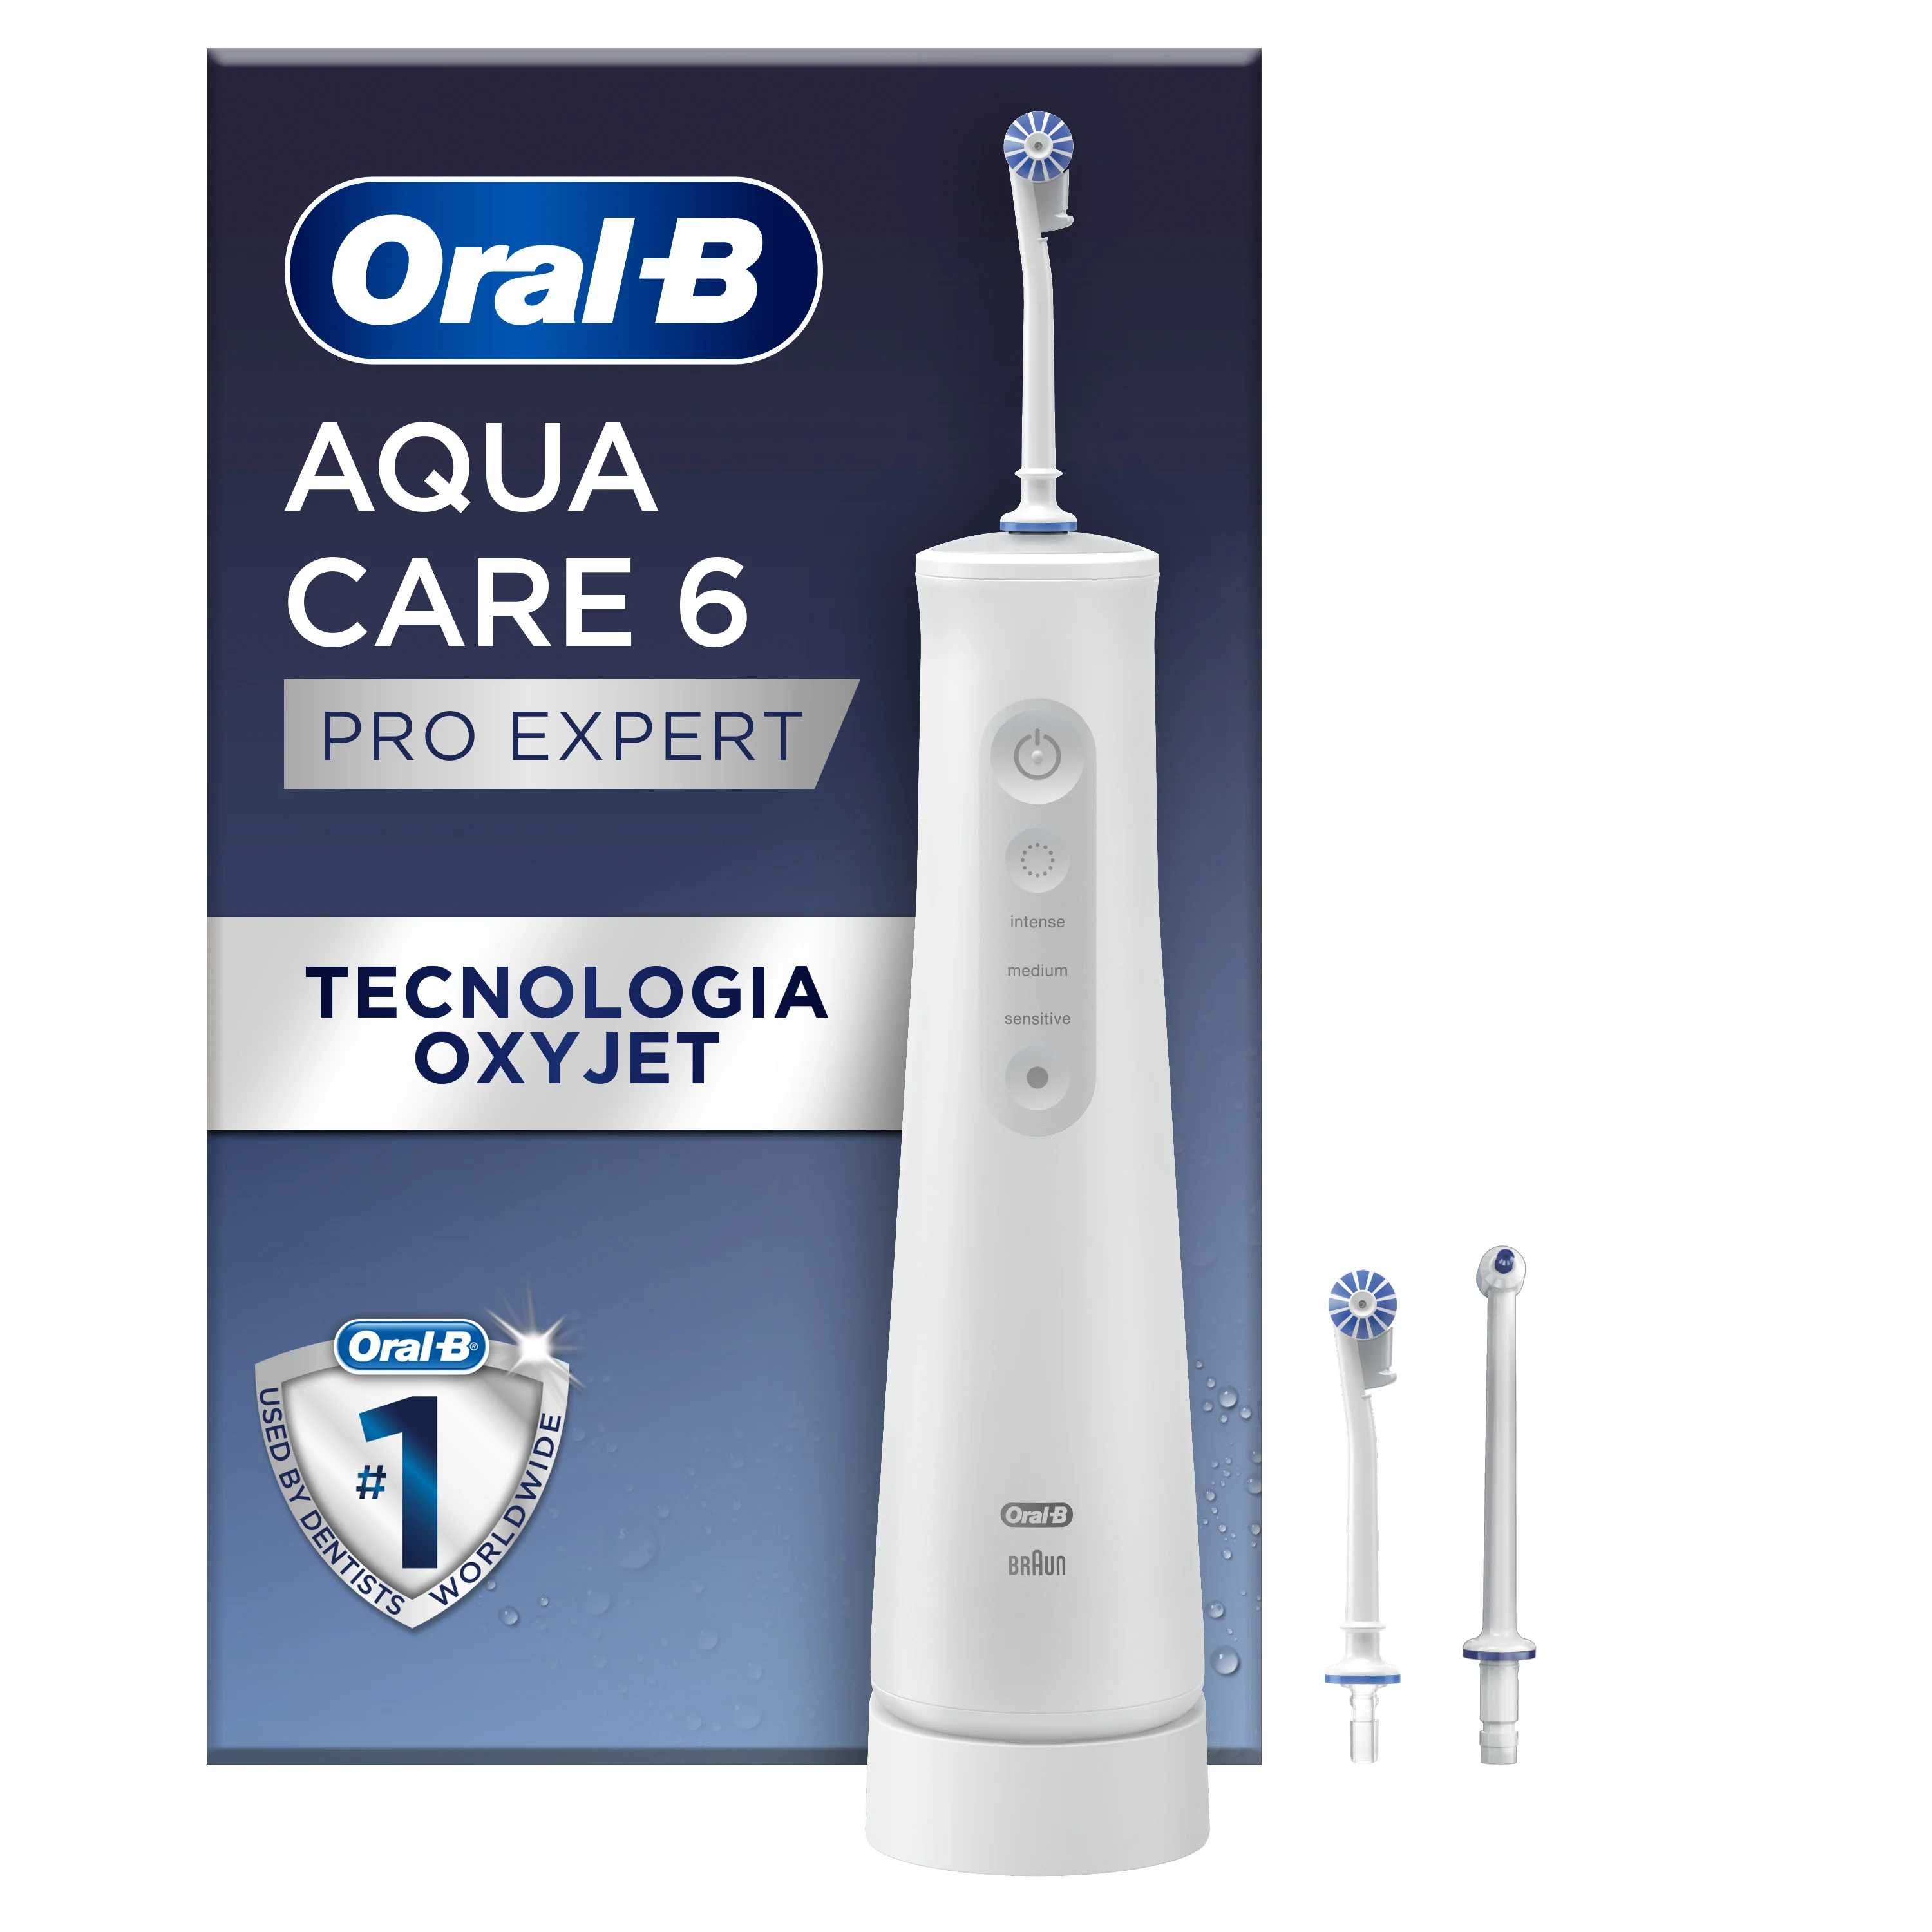 Oral-B AquaCare Pro Expert Series 6 Water Flosser - main 